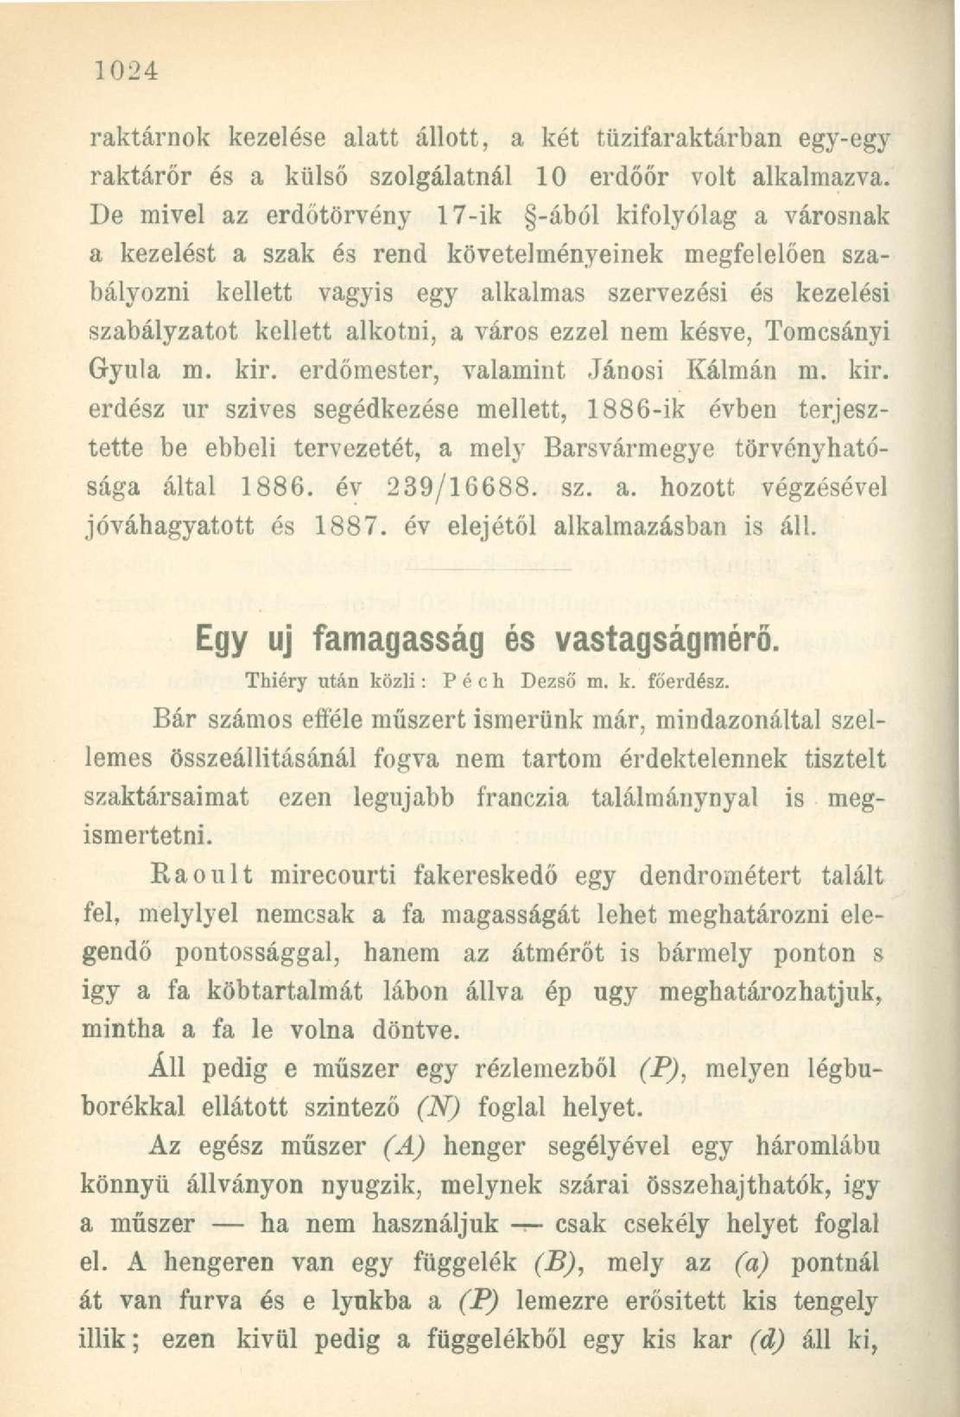 alkotni, a város ezzel nem késve, Tomcsányi Gyula m. kir. erdőmester, valamint Jánosi Kálmán m. kir. erdész ur szives segédkezése mellett, 1886-ik évben terjesztette be ebbeli tervezetét, a mely Barsvármegye törvényhatósága által 1886.